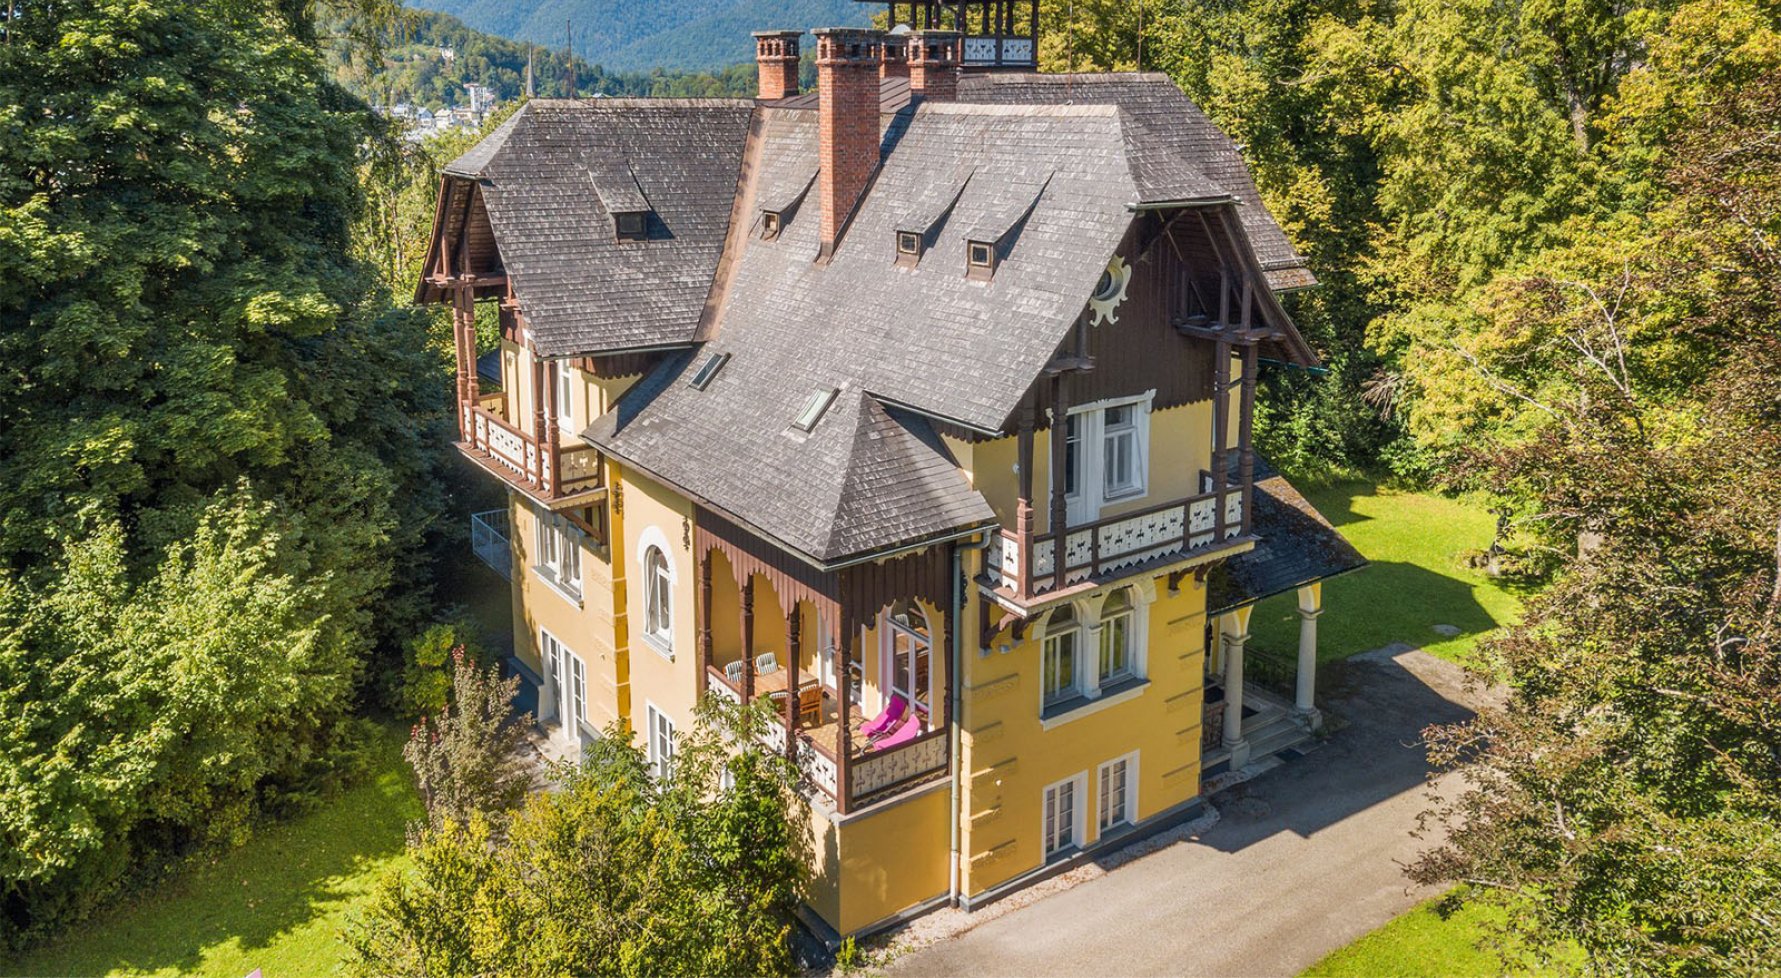 Immobilie in 4820 Bad Ischl / Salzkammergut: Salzkammergut - K&K-Villa in Alleinlage auf 5,7 ha großem Grund - bild 1